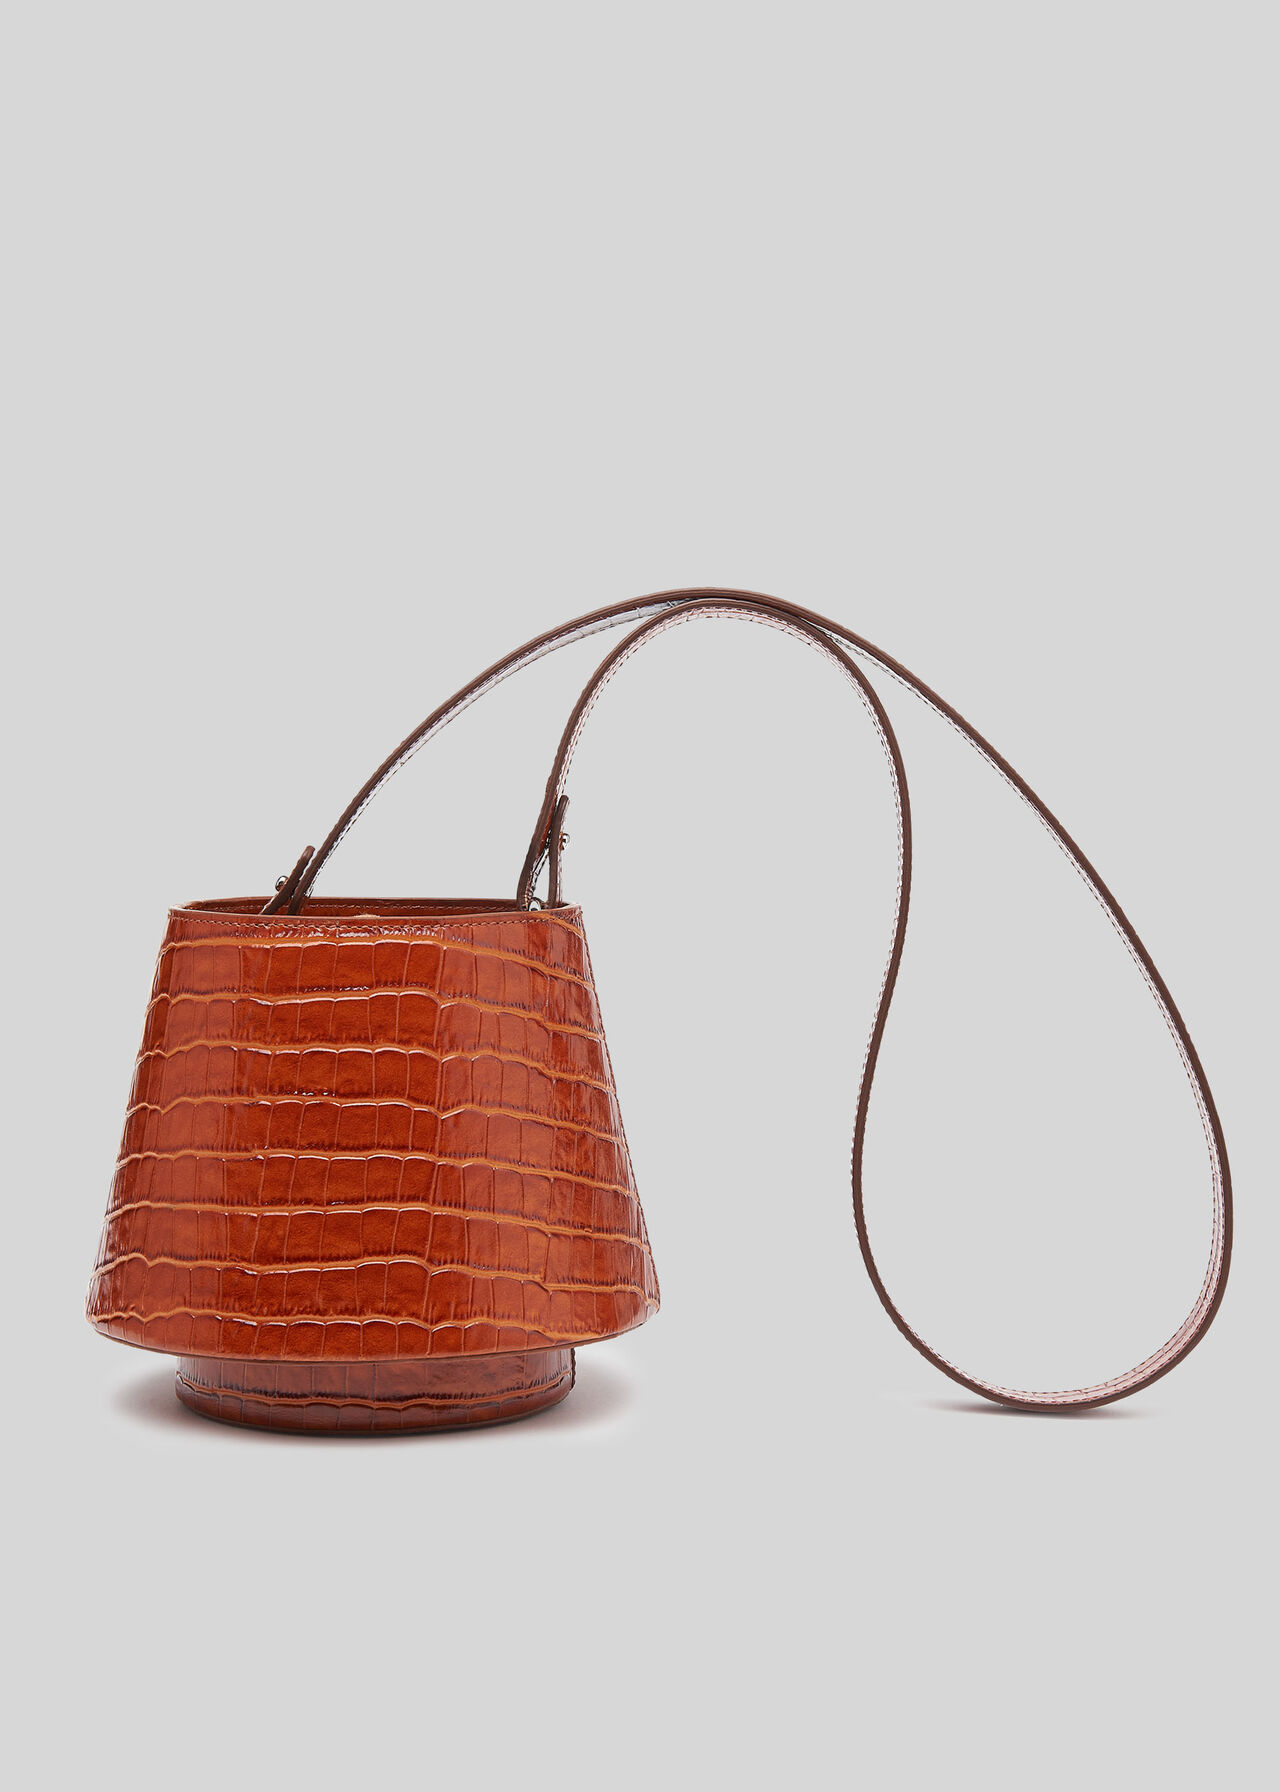 Whistles x Mlouye Lantern Bag Tan